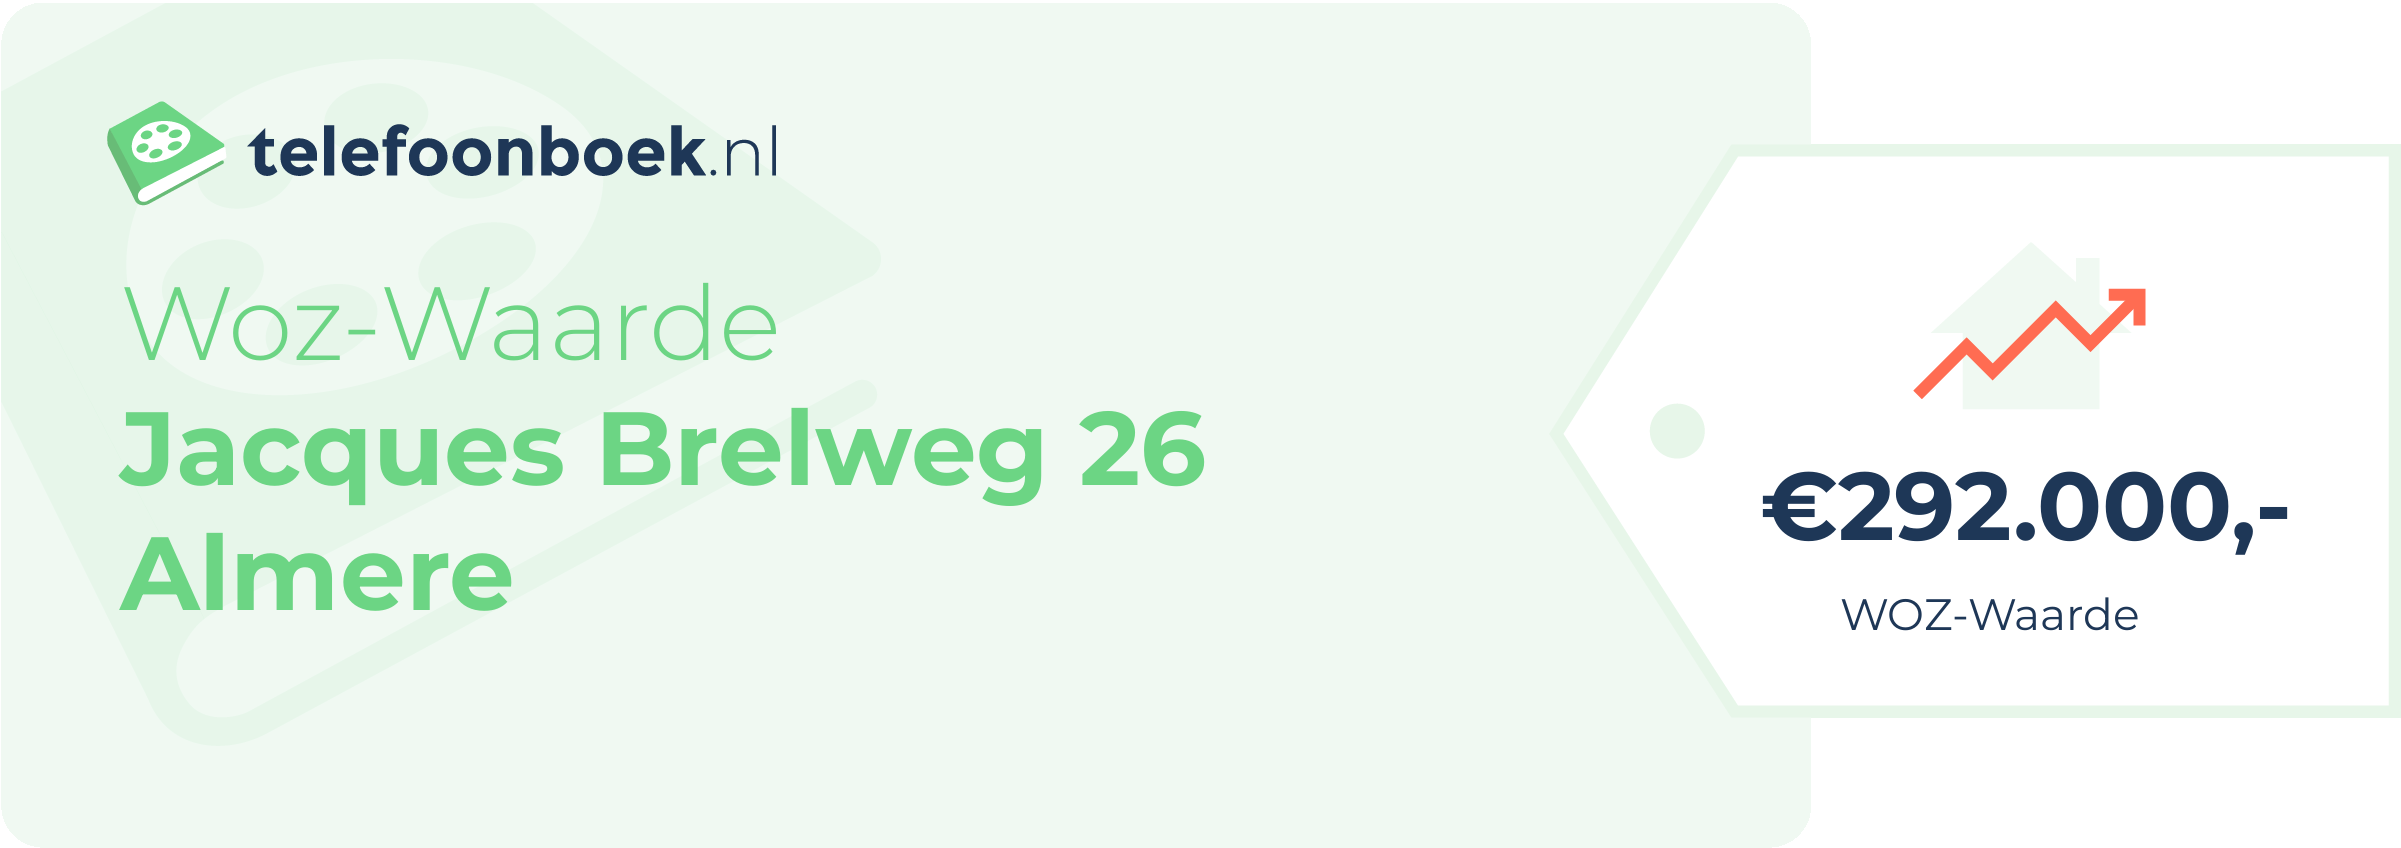 WOZ-waarde Jacques Brelweg 26 Almere